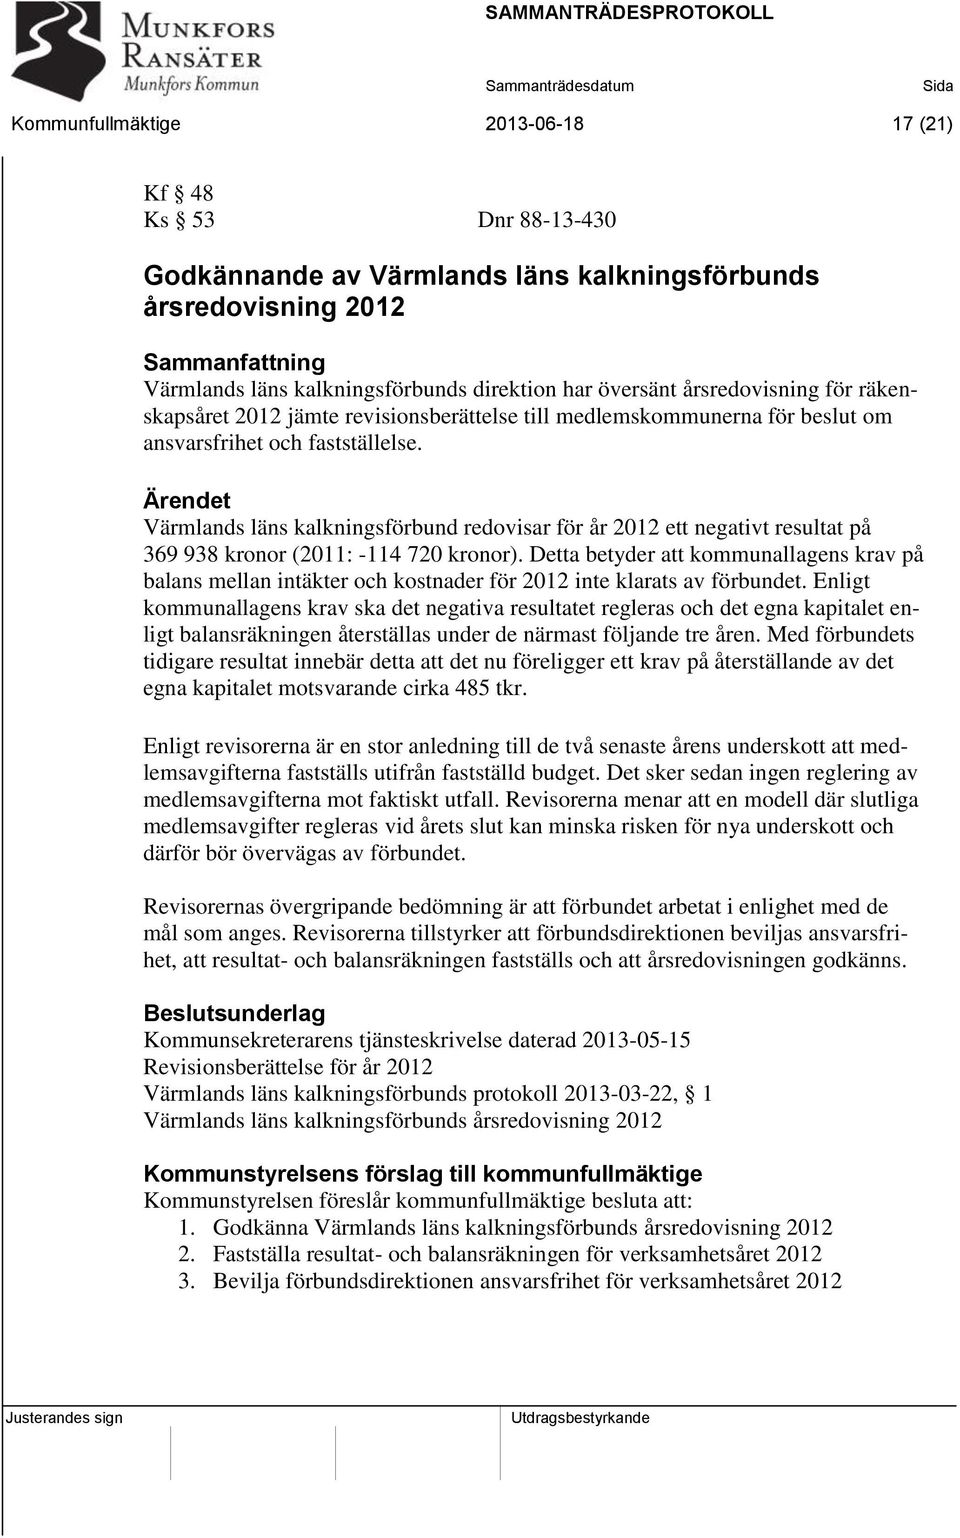 Ärendet Värmlands läns kalkningsförbund redovisar för år 2012 ett negativt resultat på 369 938 kronor (2011: -114 720 kronor).